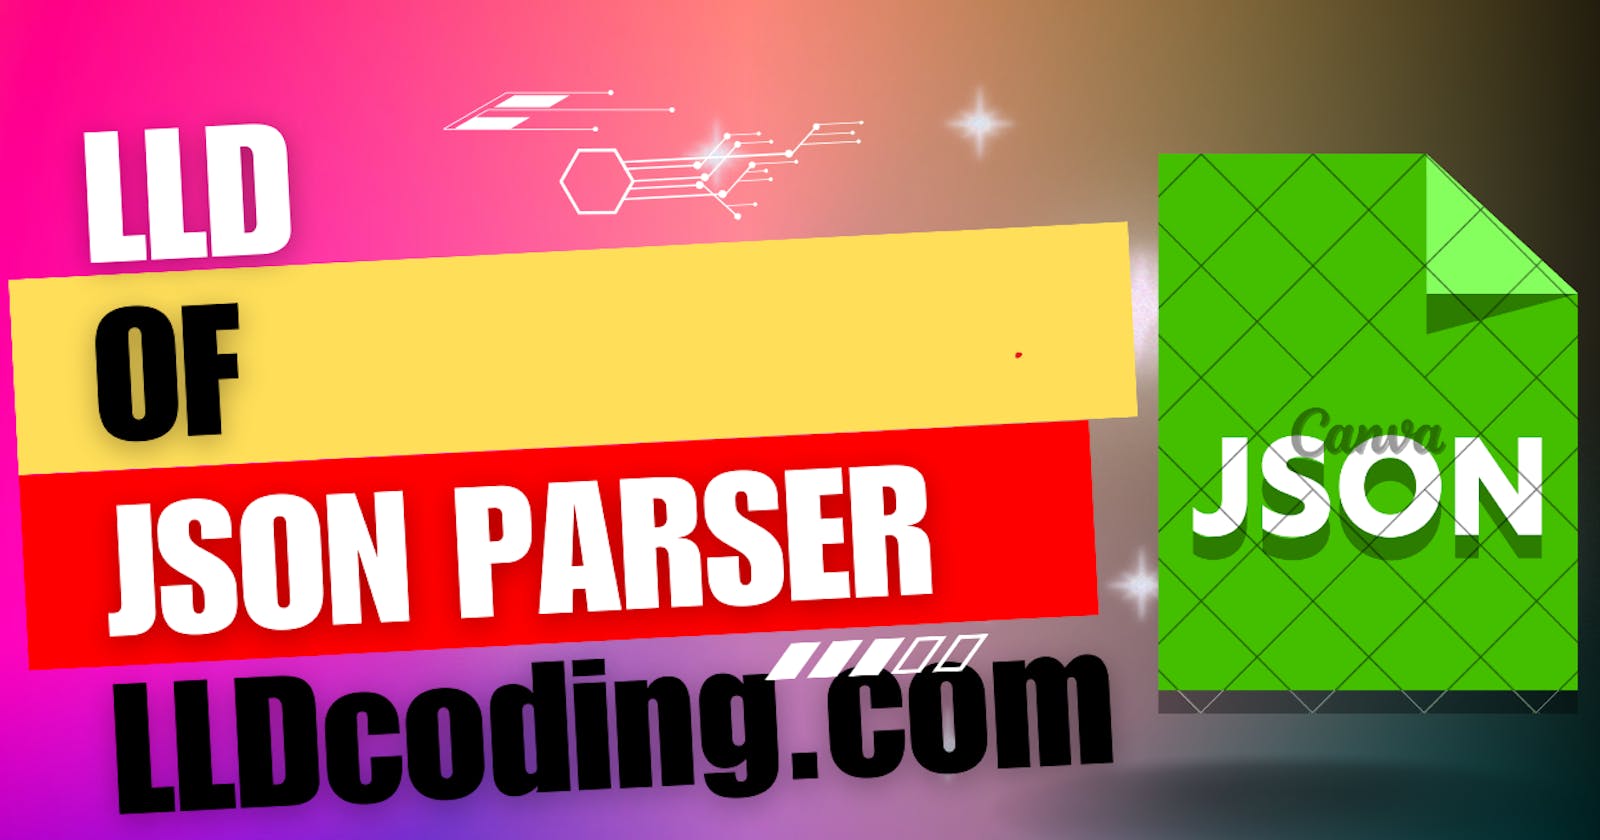 Design (LLD)  JSON parser - Machine Coding